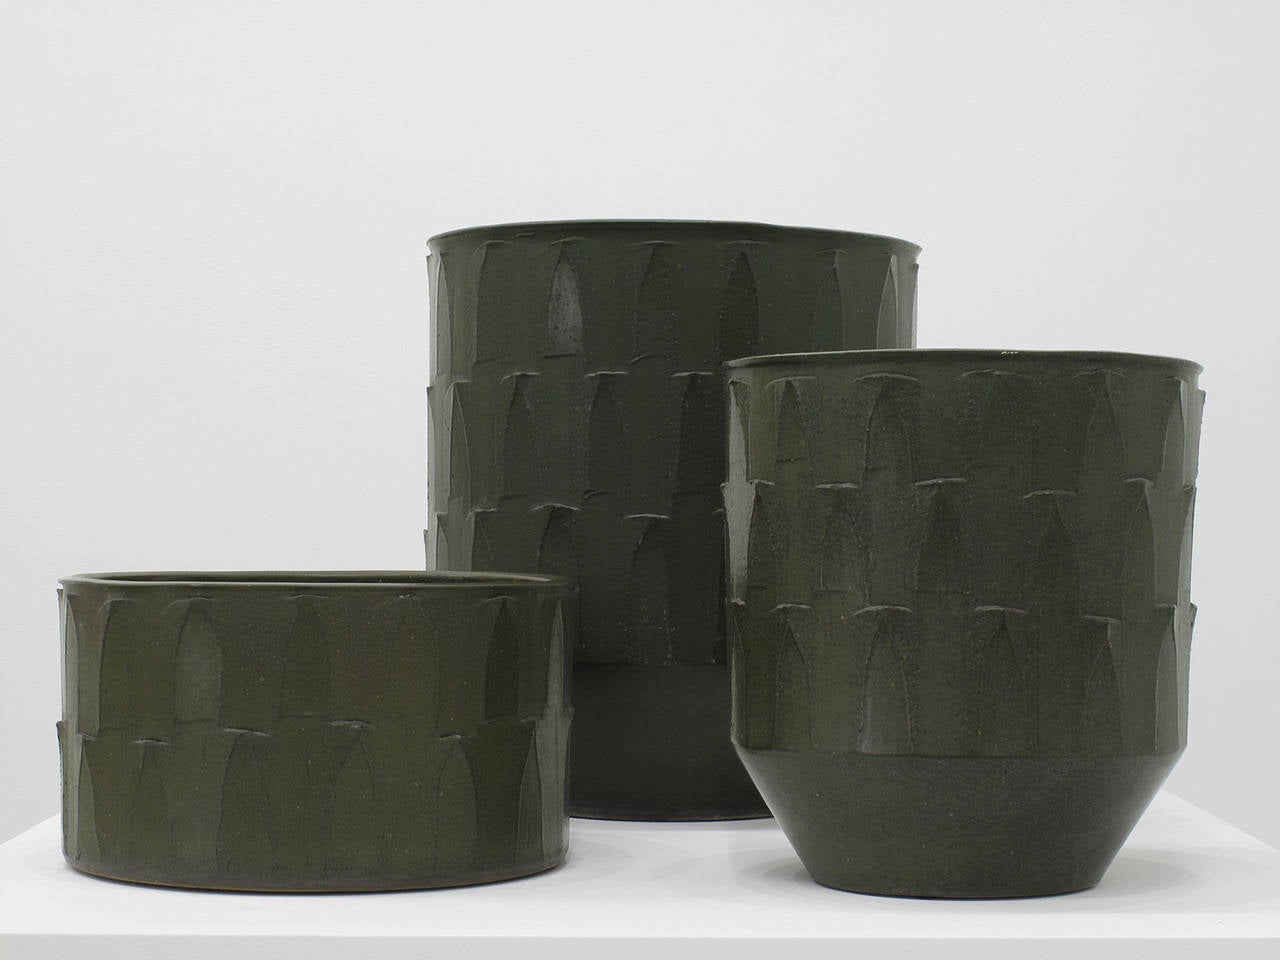 20th Century David Cressey Ceramic Planters, 'Ribbed' Design, 1960s